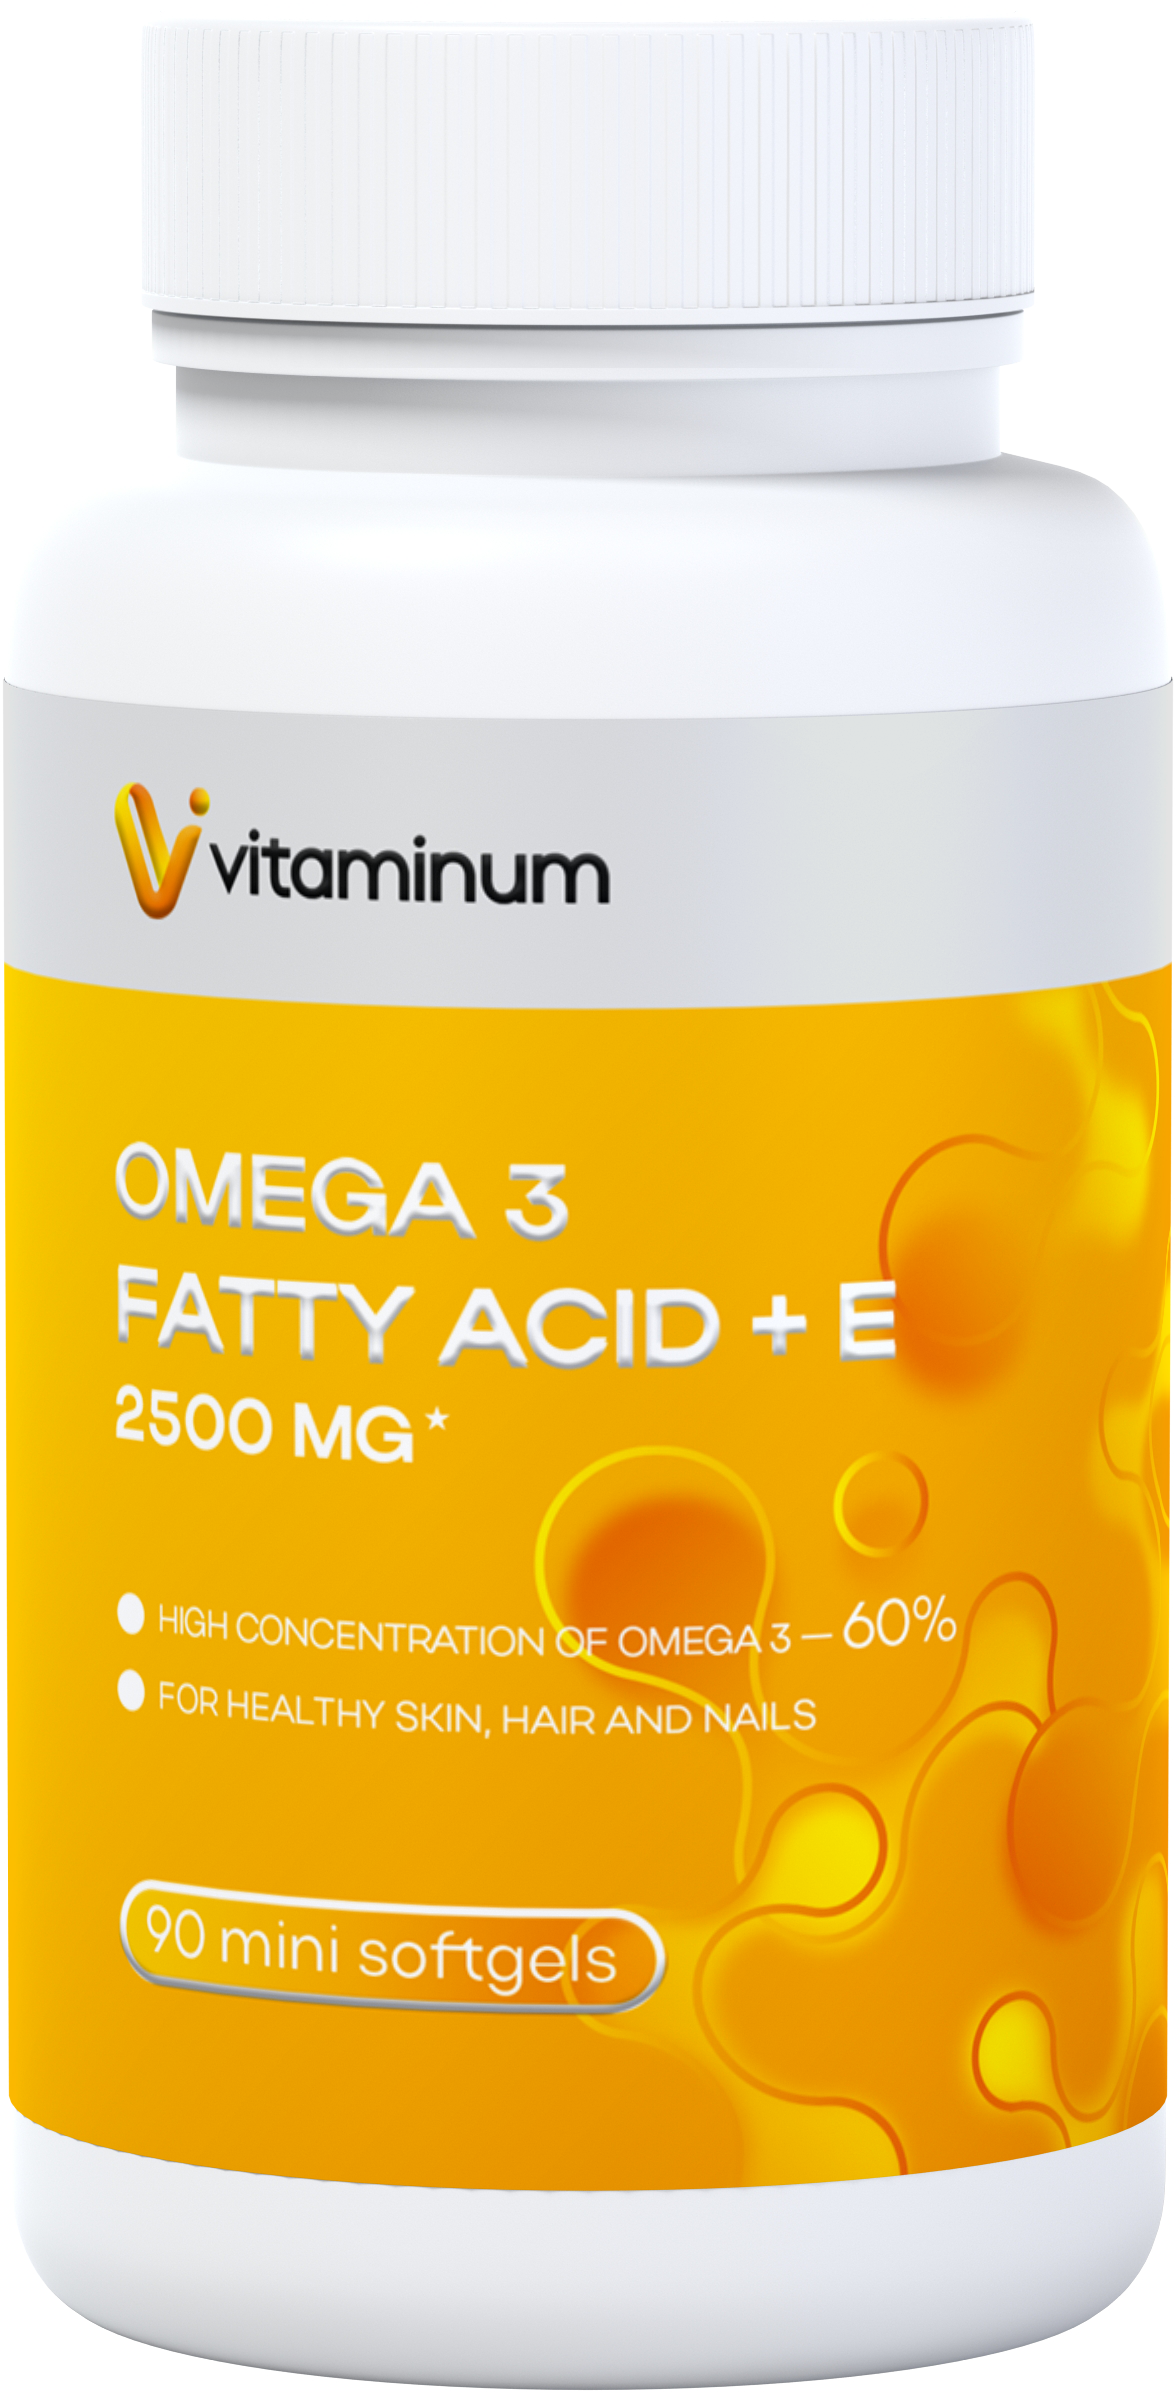  Vitaminum ОМЕГА 3 60% + витамин Е (2500 MG*) 90 капсул 700 мг  в Кингисеппе